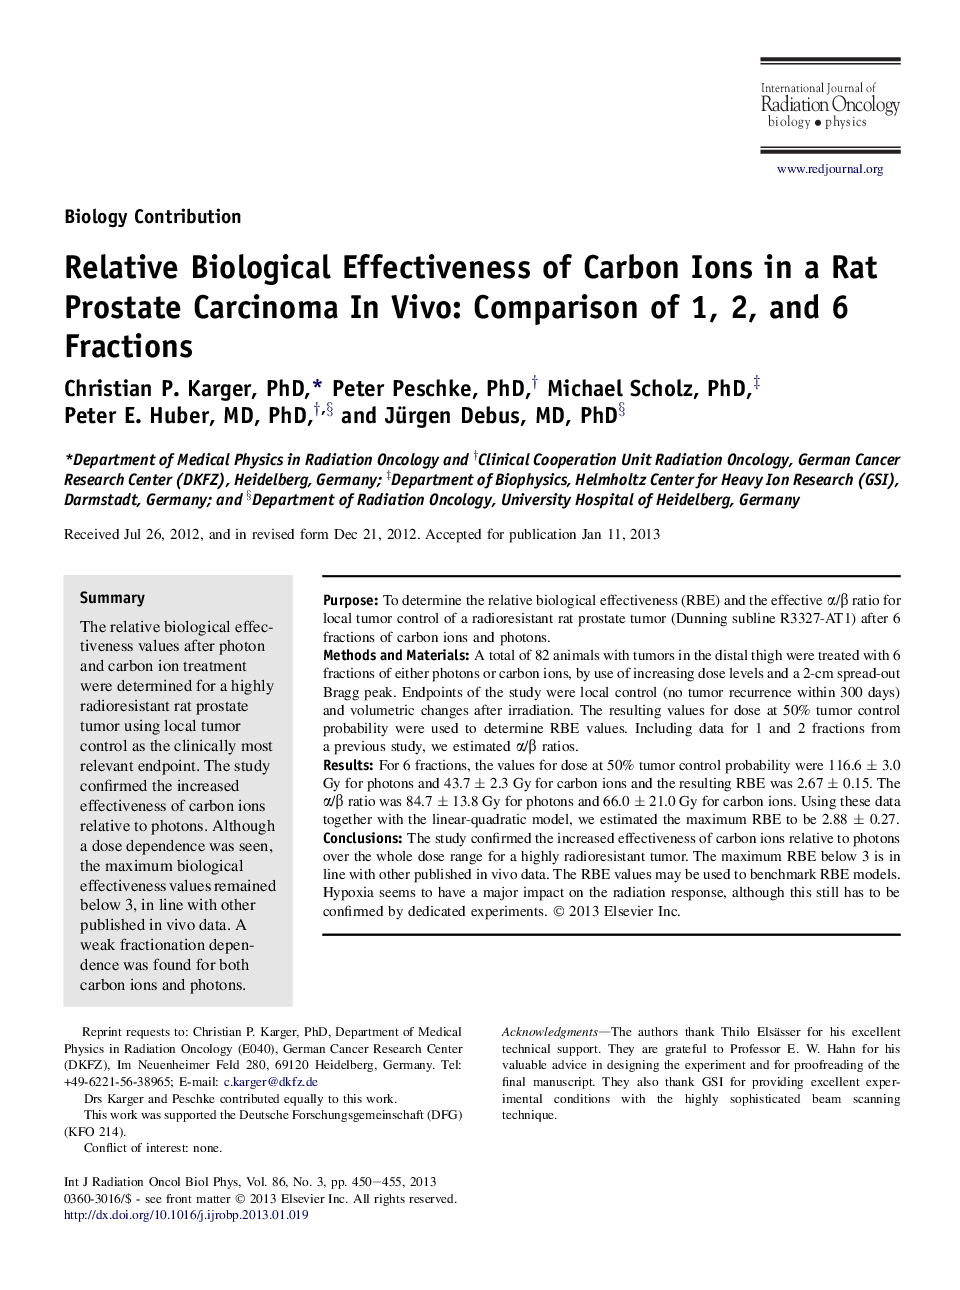 اثربخشی بیولوژیکی نسبی یون های کربن در یک کارسینوم پروستات موش صحرایی: مقایسه مقادیر 1، 2 و 6 